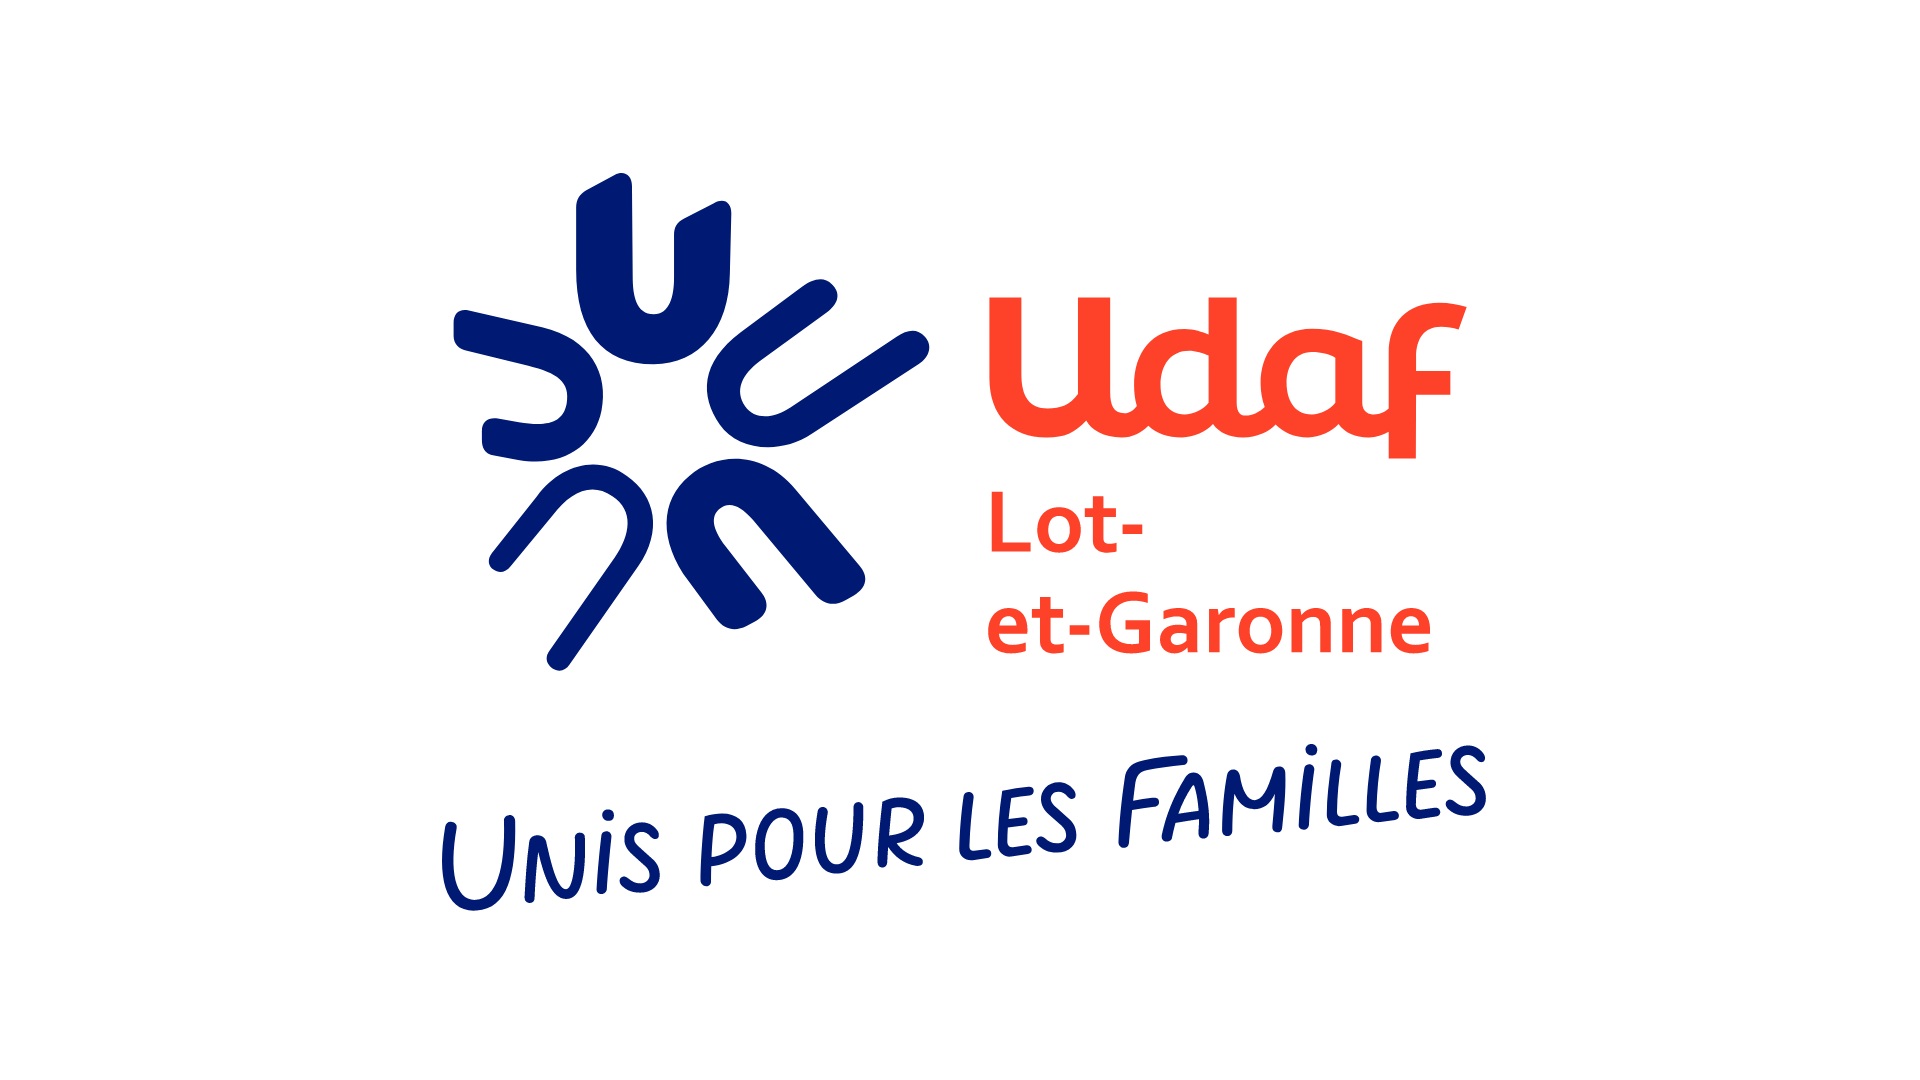 Entreprise UDAF - Union départementale des associations familiales